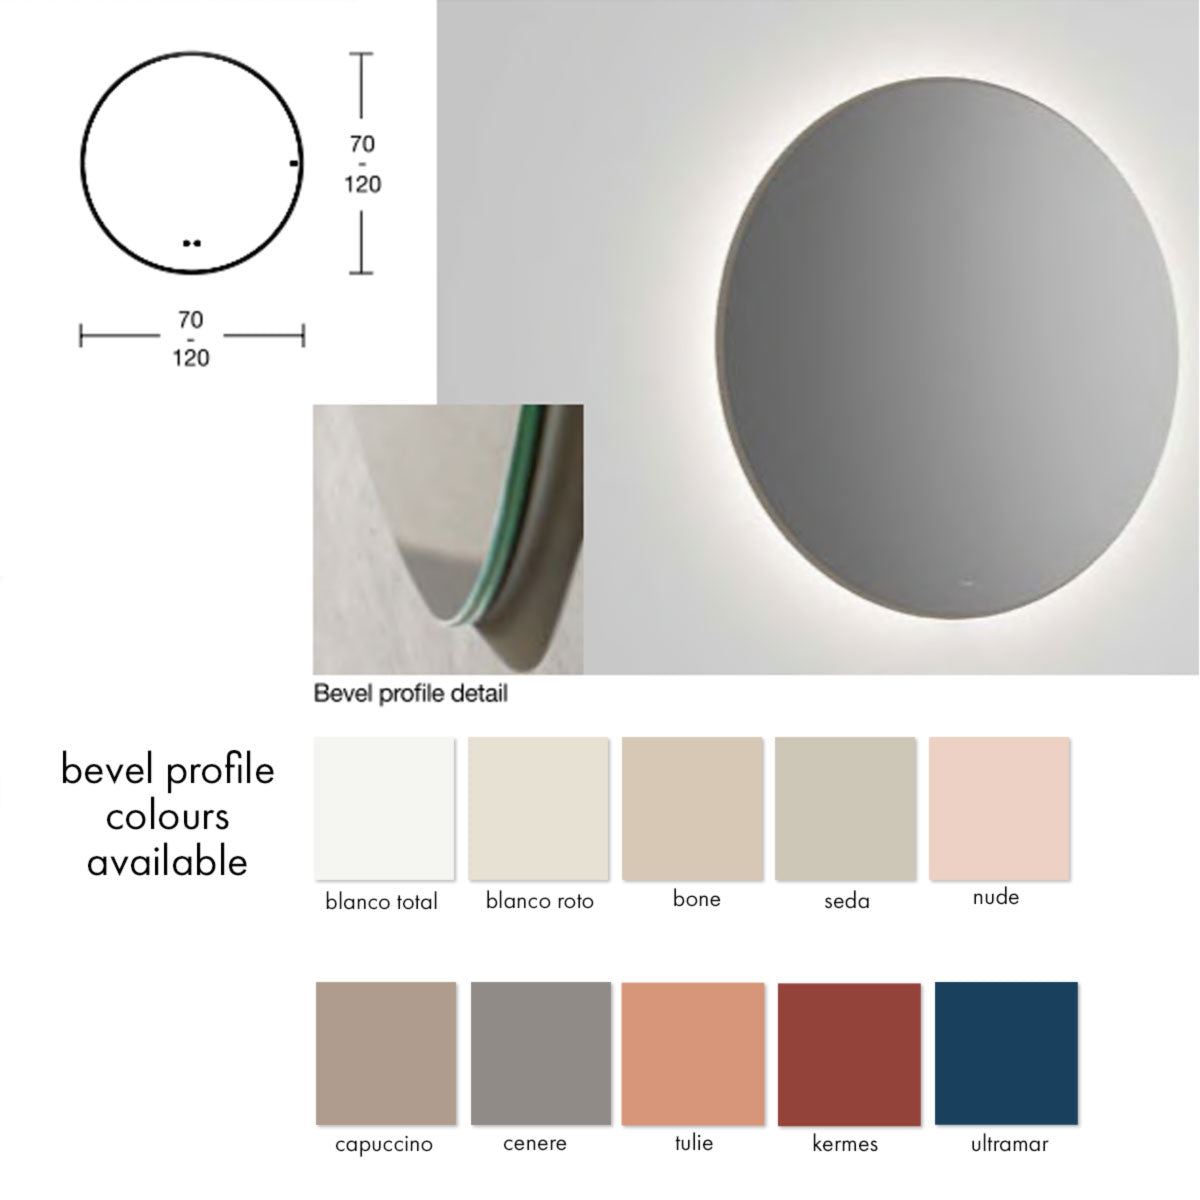 Fiora Tondo LED Illuminated Round Bathroom Mirror